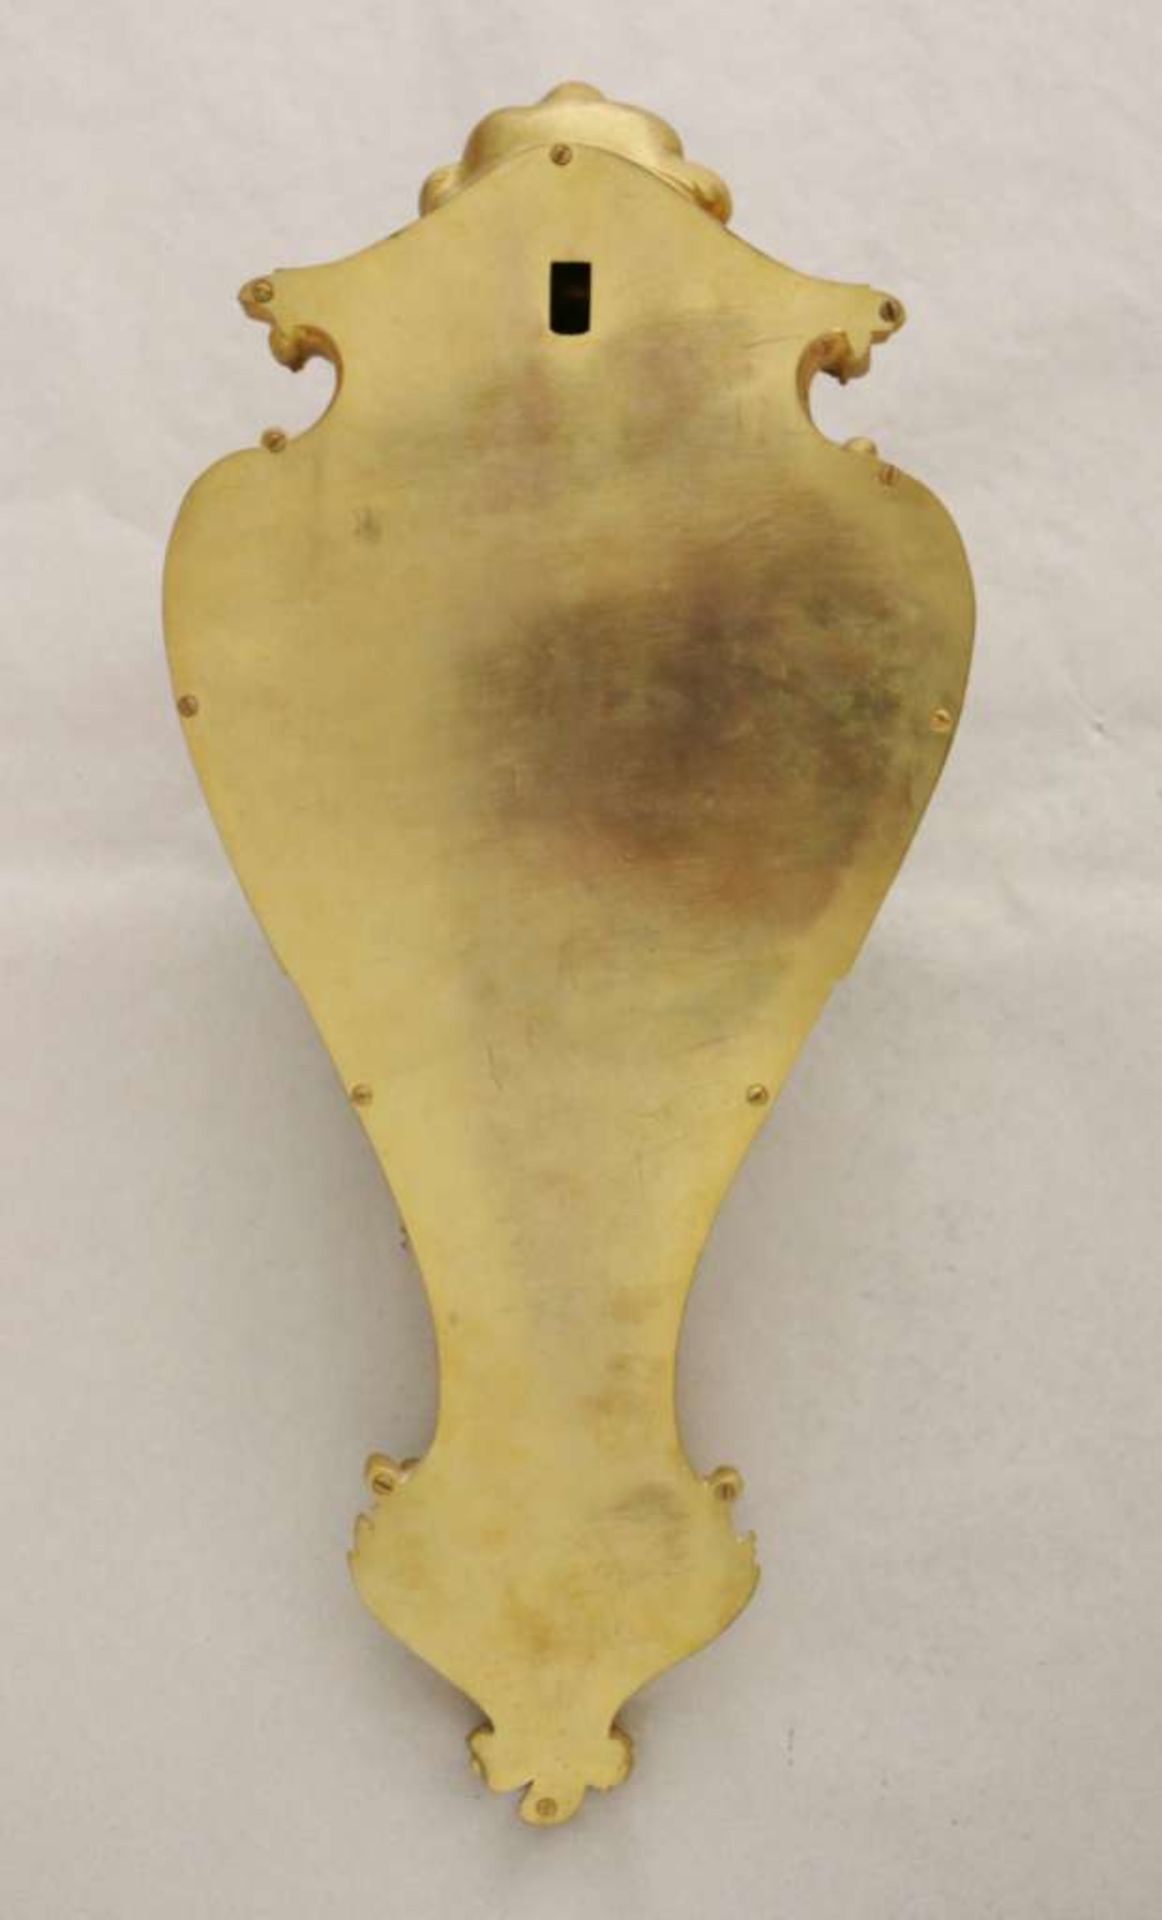 Carteluhr von Crosnier à Paris, 19. Jh., vergoldetes Gehäuse, Emailzifferblatt mit römischen - Bild 2 aus 2